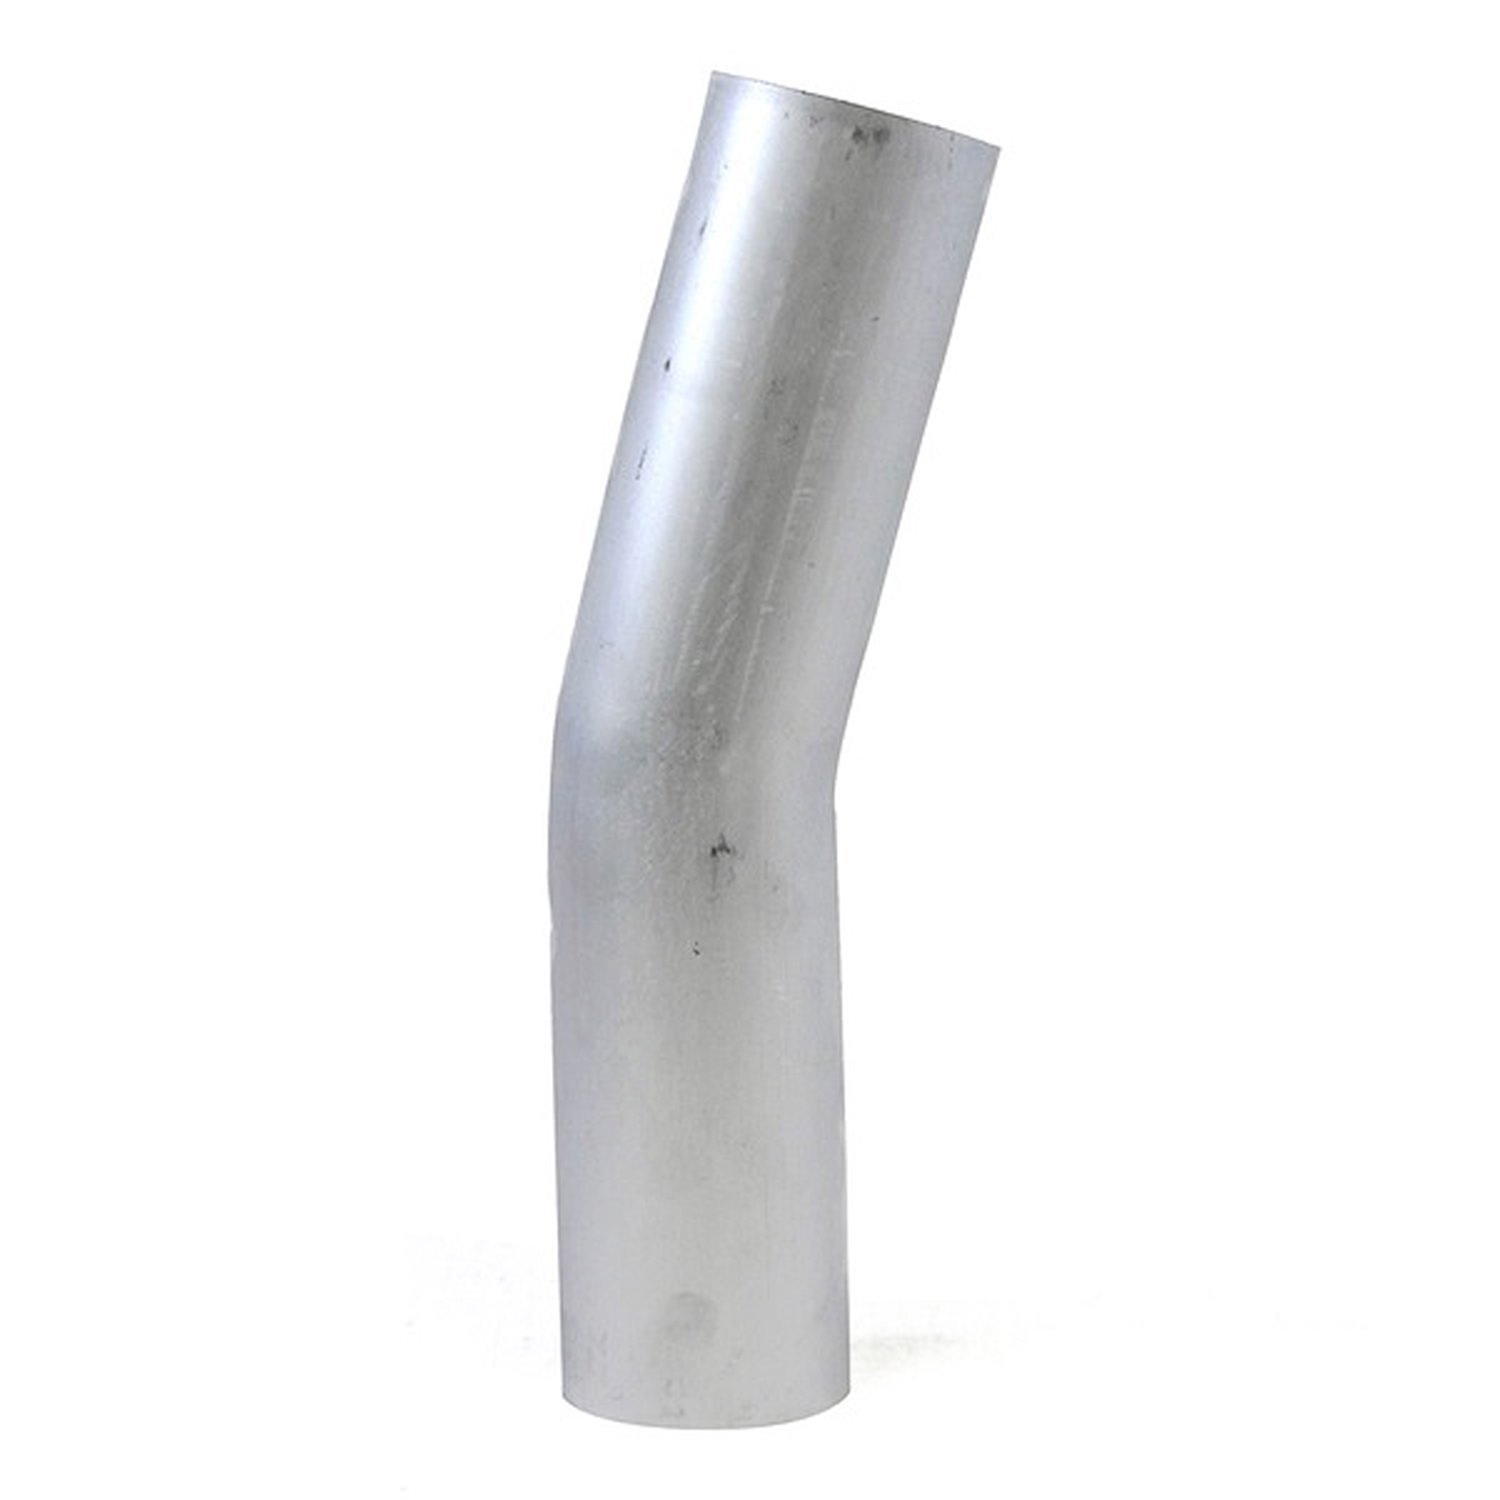 AT15-275-CLR-43 Aluminum Elbow Tube, 6061 Aluminum, 15-Degree Bend Elbow Tubing, 2-3/4 in. OD, Large Radius, 4-5/16 in. CLR